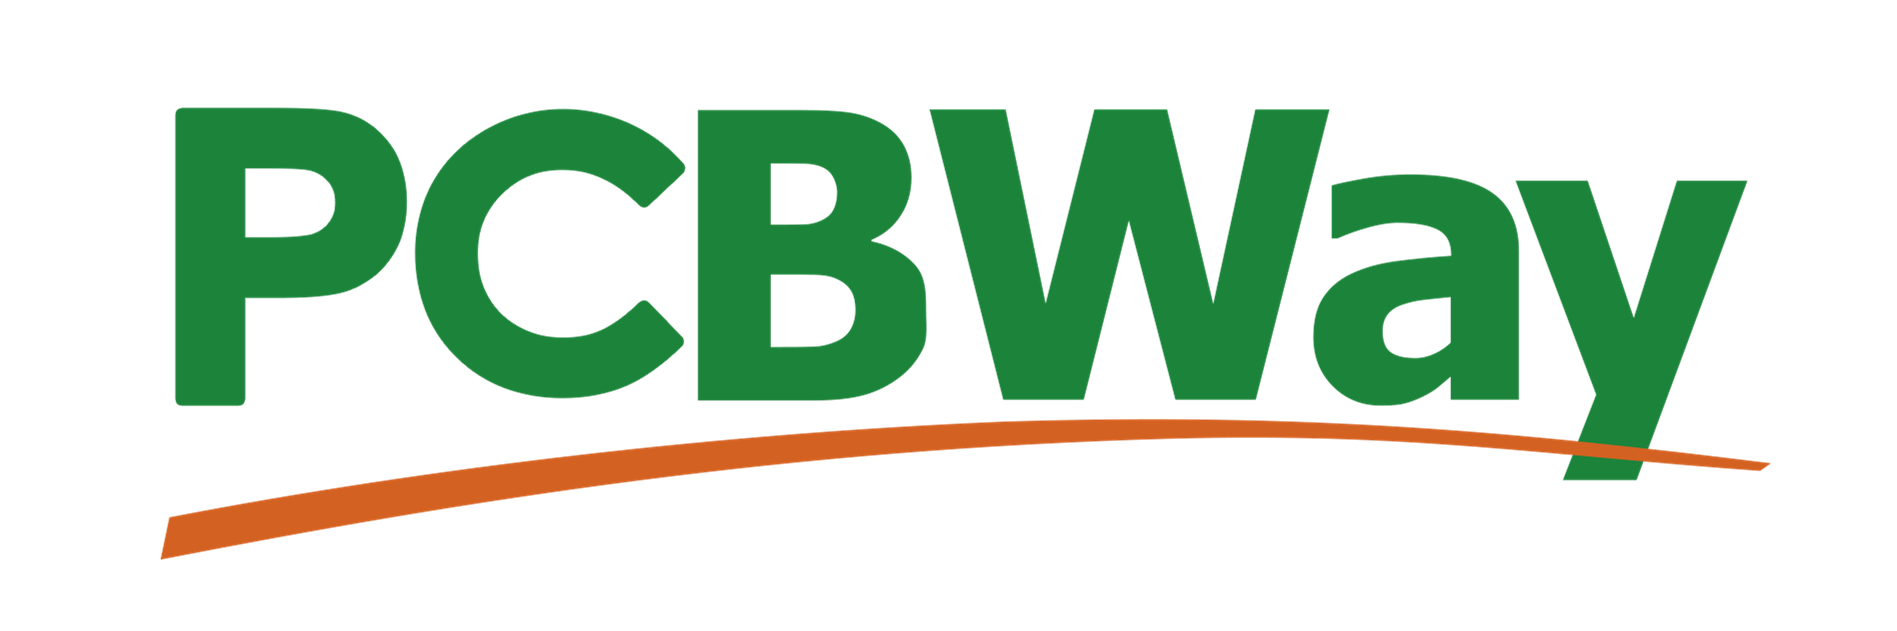 PCBway logo.png